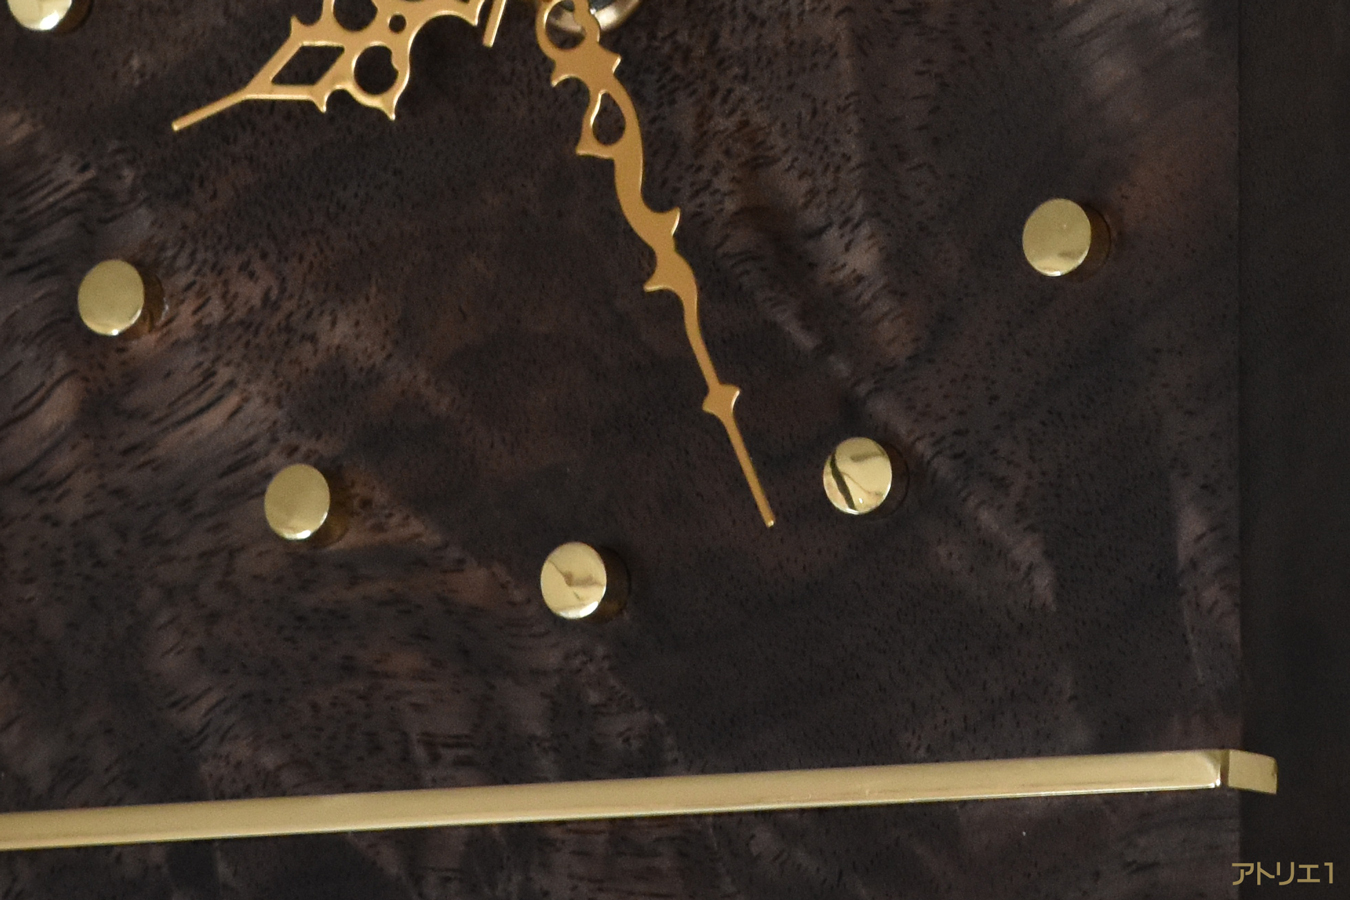 チーク・マホガニーと共に世界の三大銘木と言われているブラックウォルナットを用い、その流れるような木目とそれに交わるシルクのように輝く杢を磨き上げた真鍮のラインで抑え、磨き上げた時刻目盛りの真鍮と共にゴージャス感のあるデザインに仕上げました。